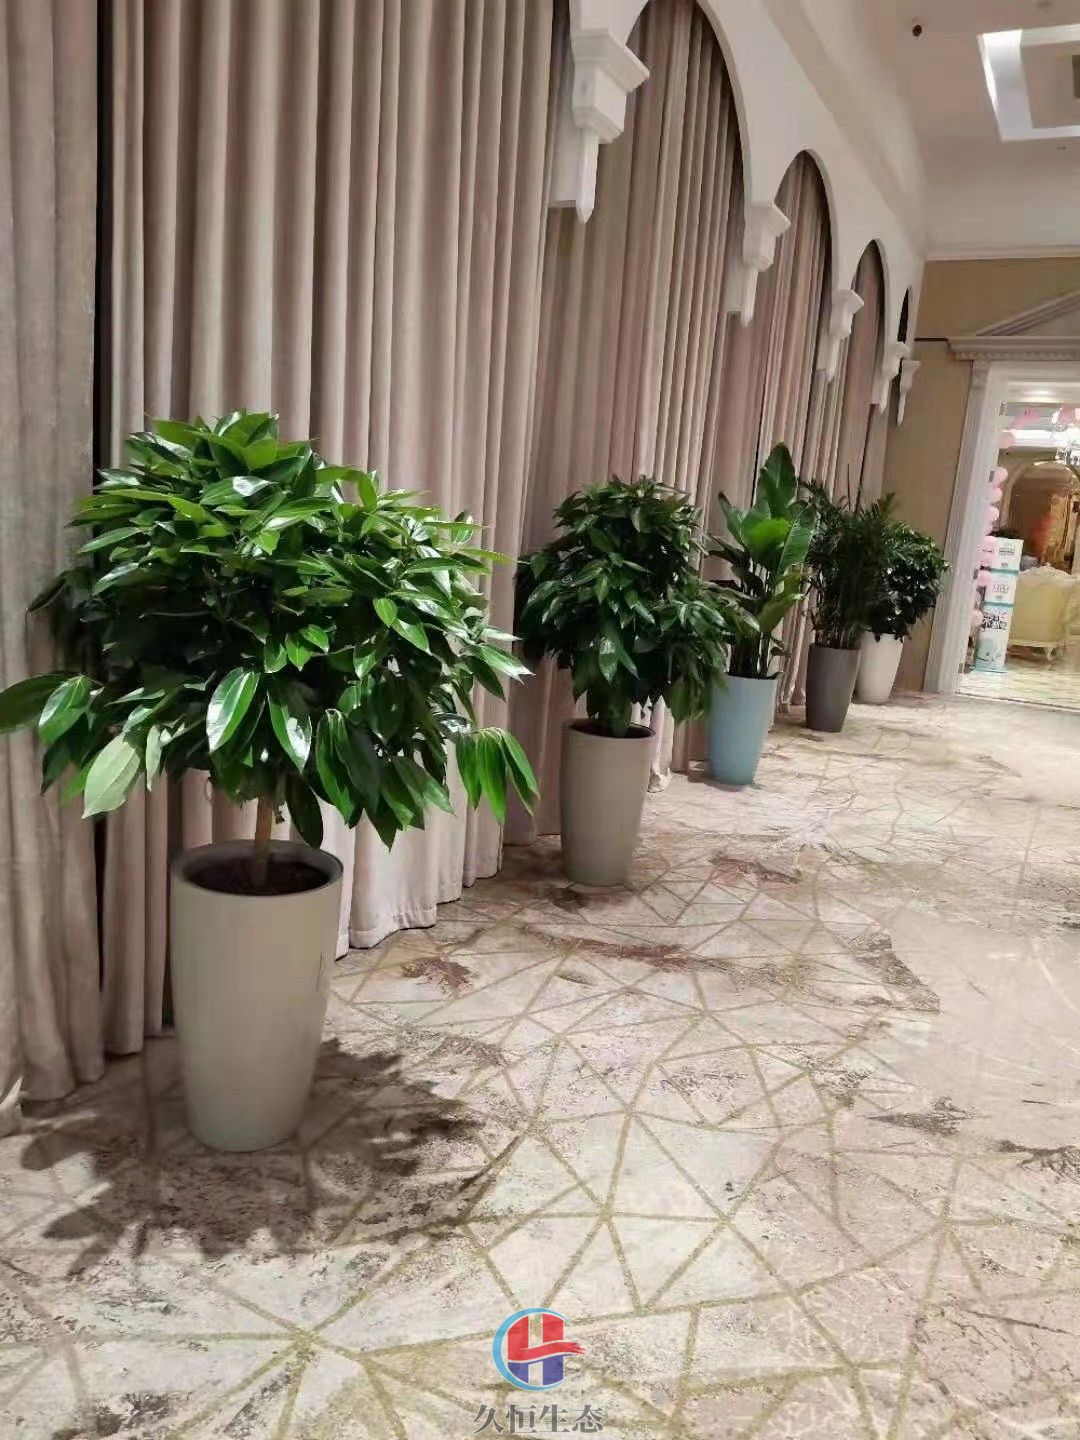 宁波北仑酒店走廊花卉绿植摆放